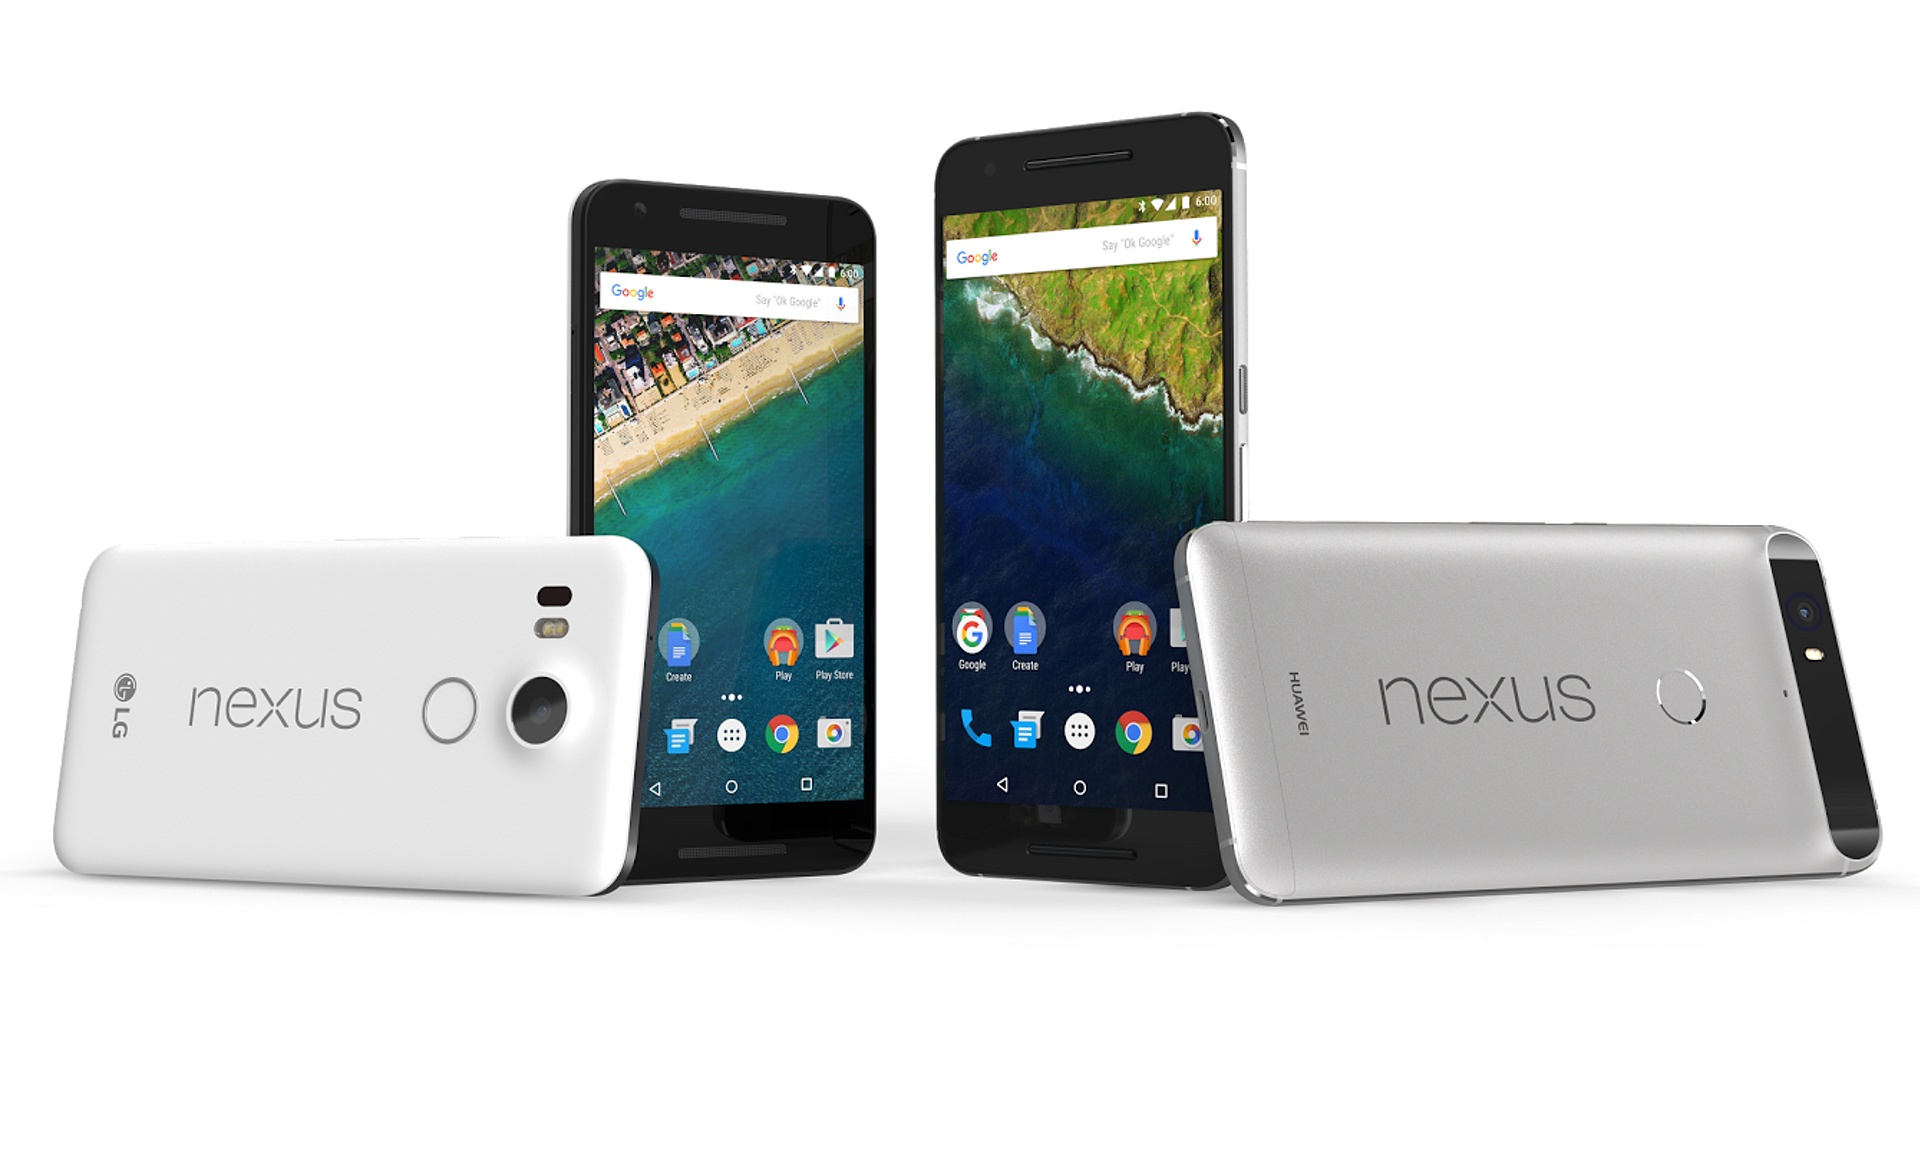 هذه هي الشركة التي ستقدم هاتف جوجل نكزس Nexus لهذا العام